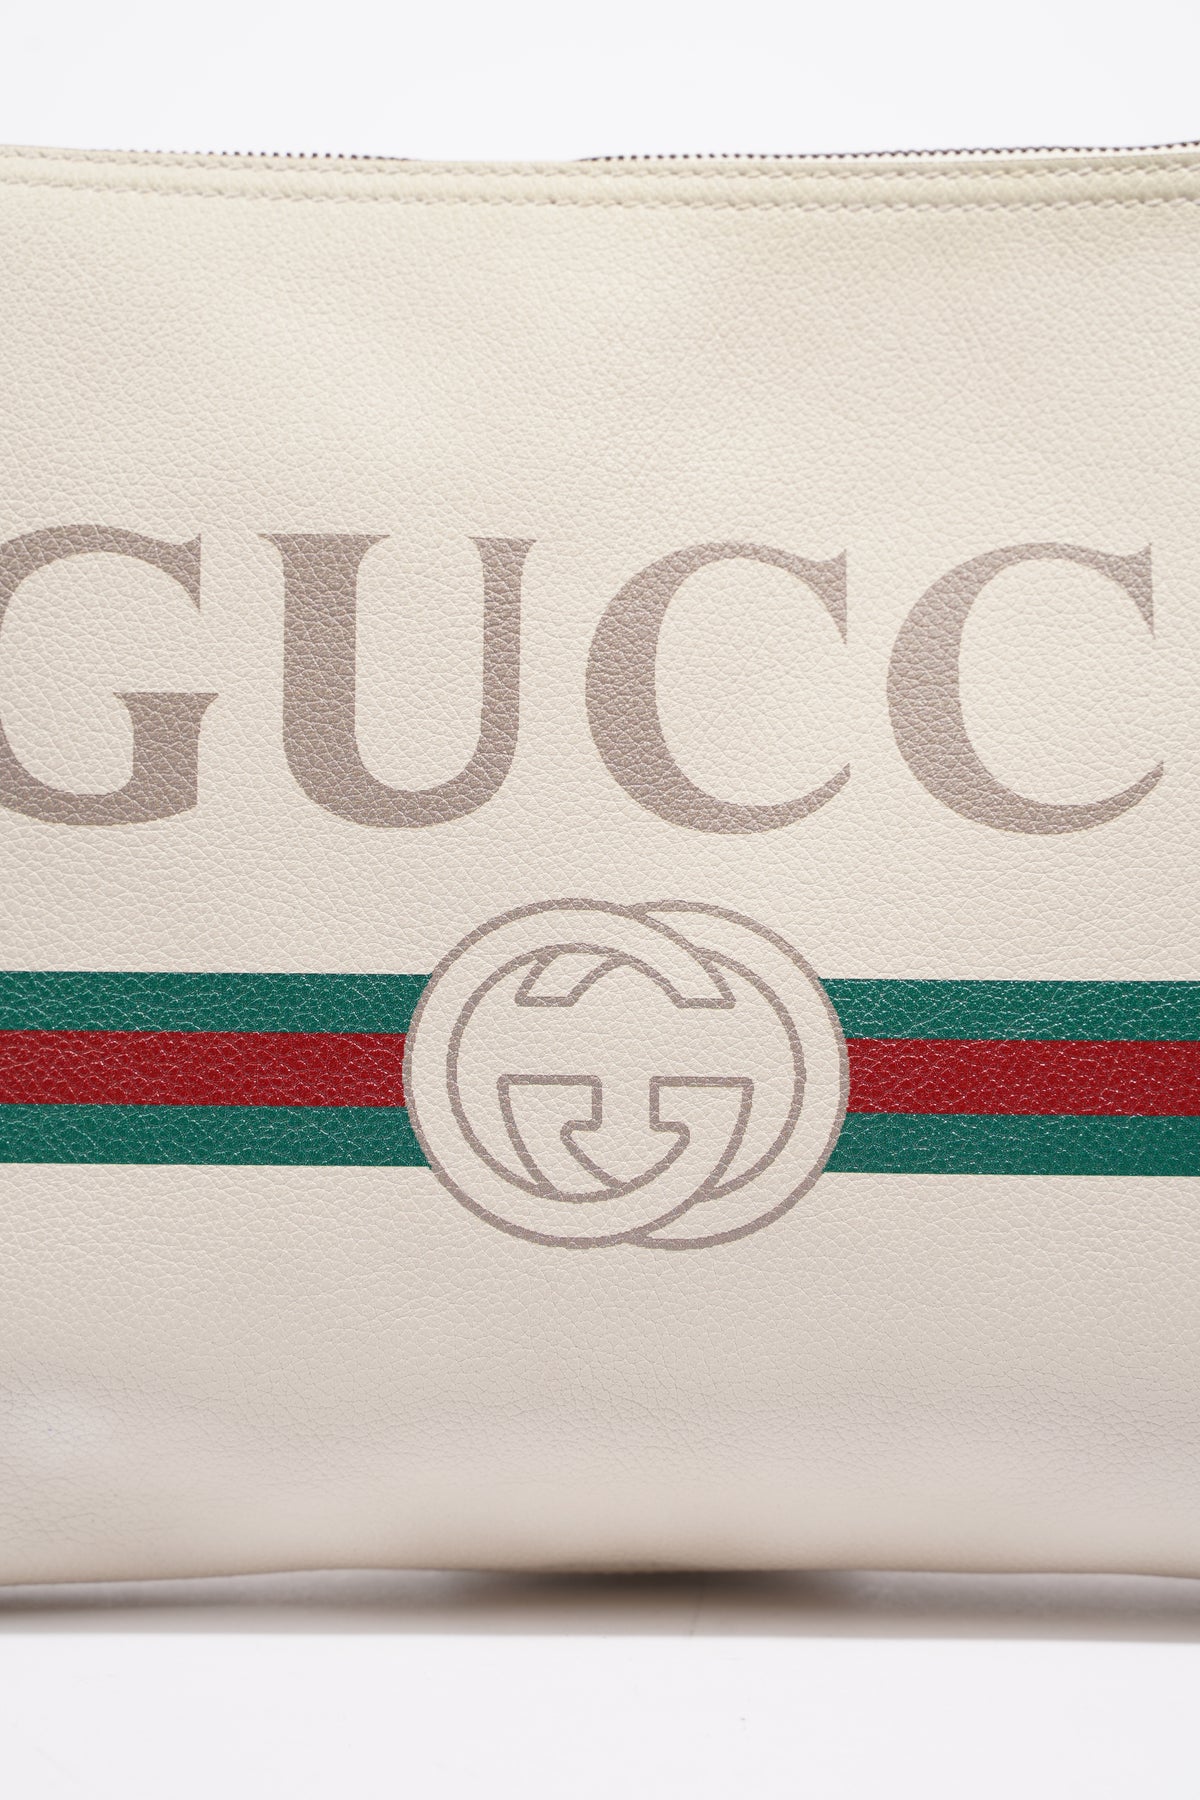 Gucci Womens Portfolio Clutch Bag Cream – Luxe Collective